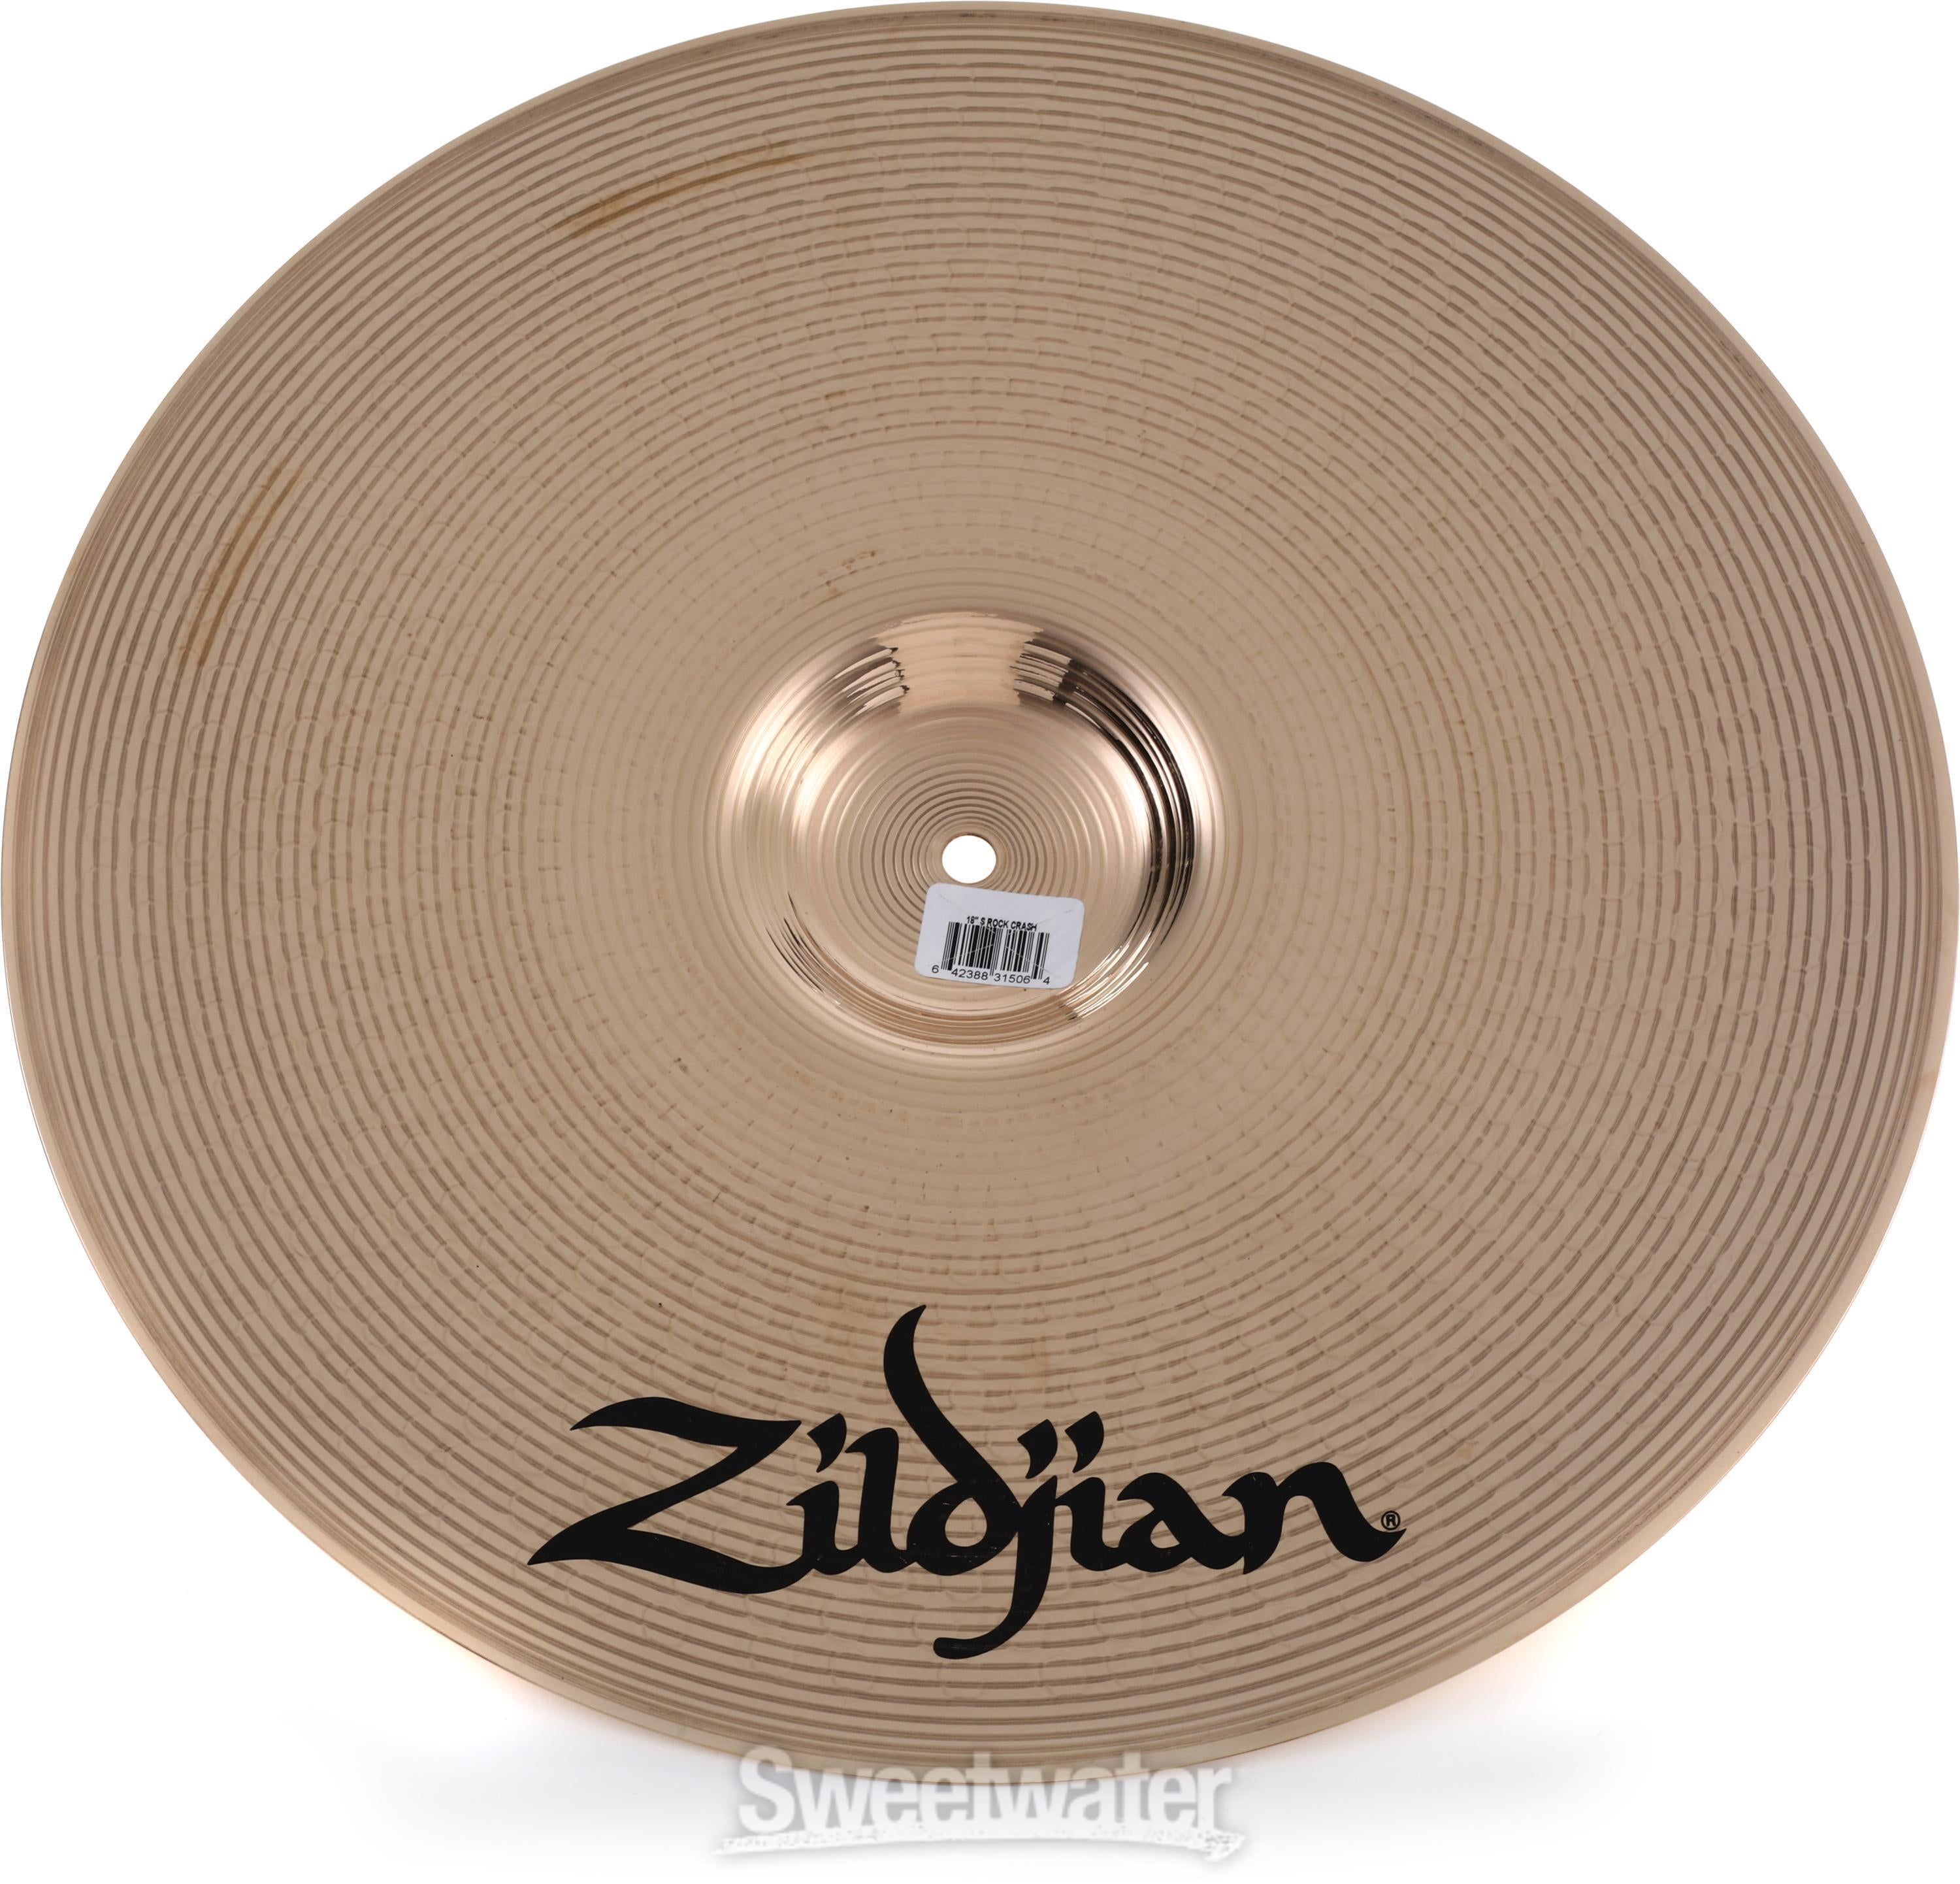 Zildjian 18 inch S Series Rock Crash Cymbal | Sweetwater